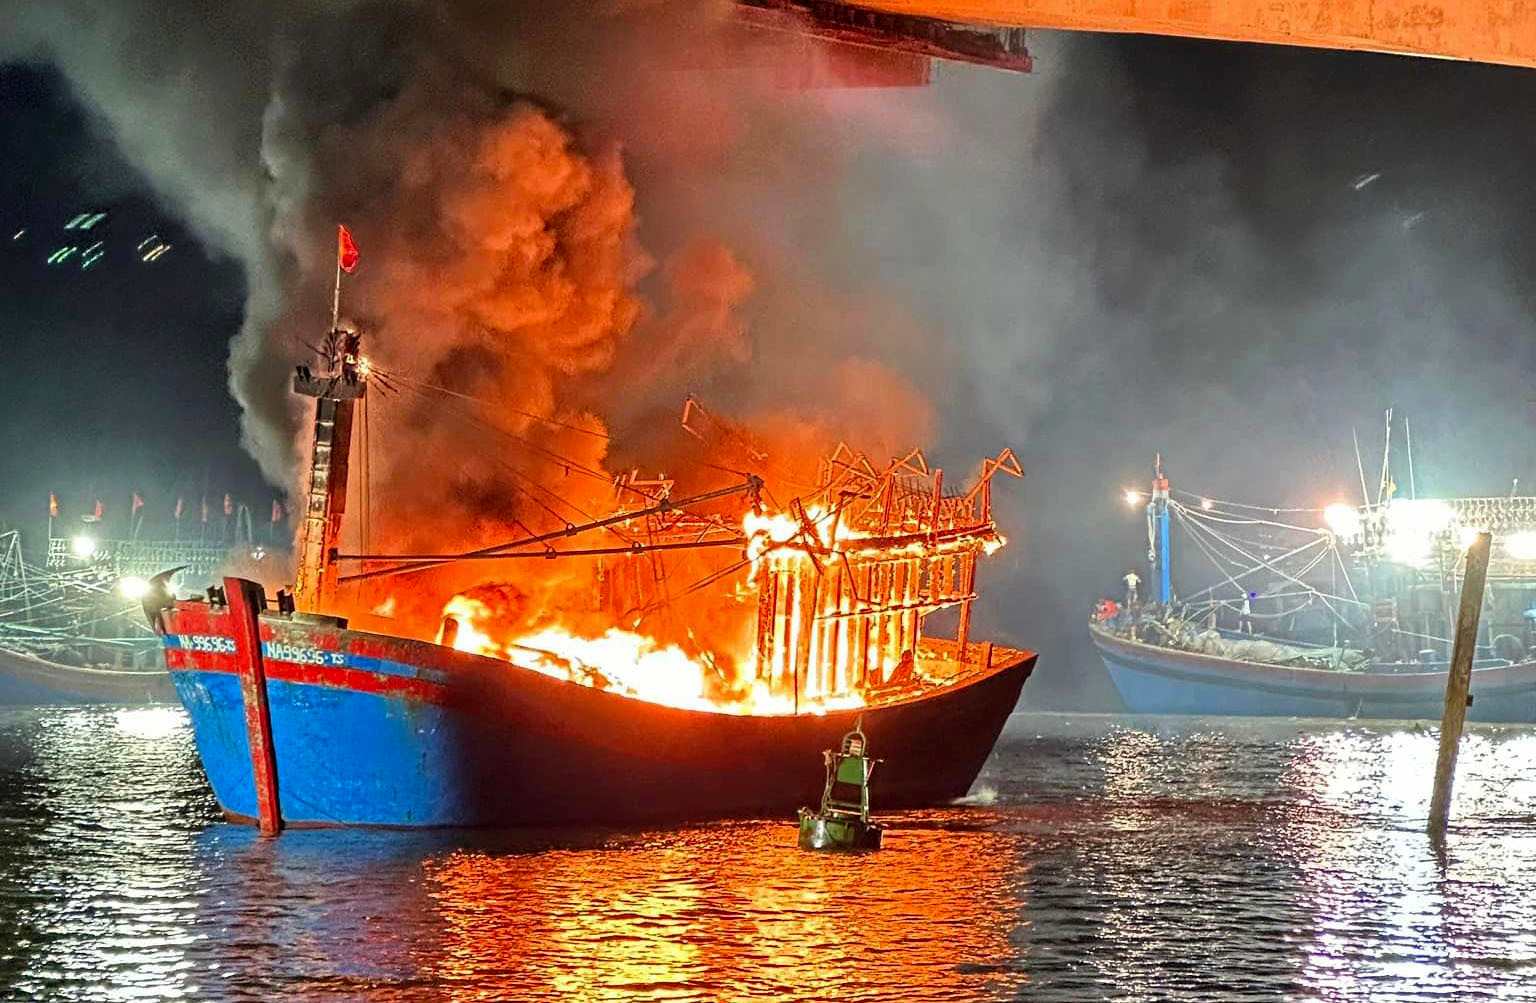 bna_Một trong những con tàu cá của ngư dân Quỳnh Lưu bị bốc cháy trong đêm 287. Ảnh Việt Hùng.jpg